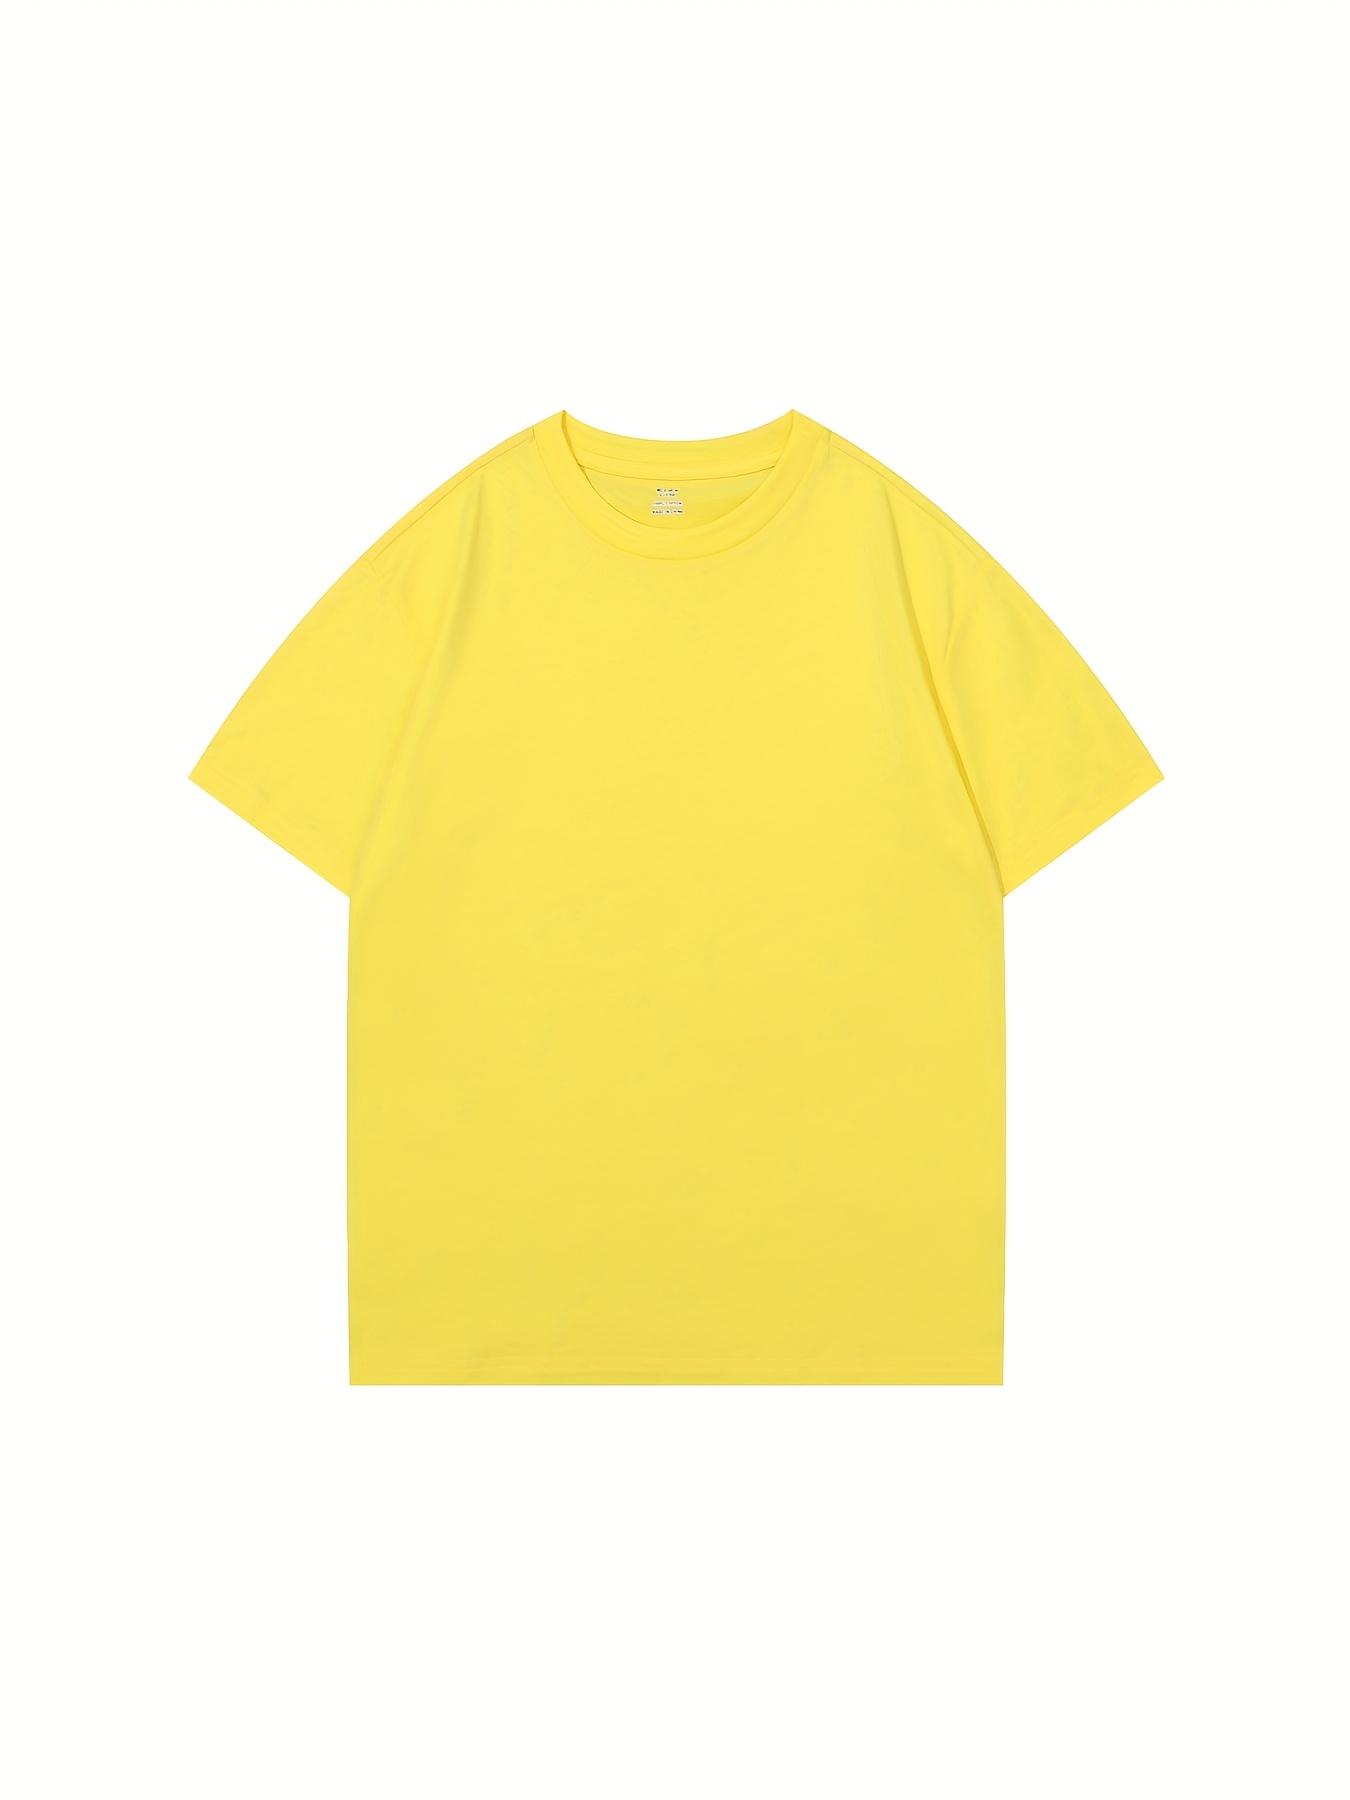 Las mejores ofertas en Niñas Amarillo 9 tamaño Tops, camisas y camisetas  para Niñas